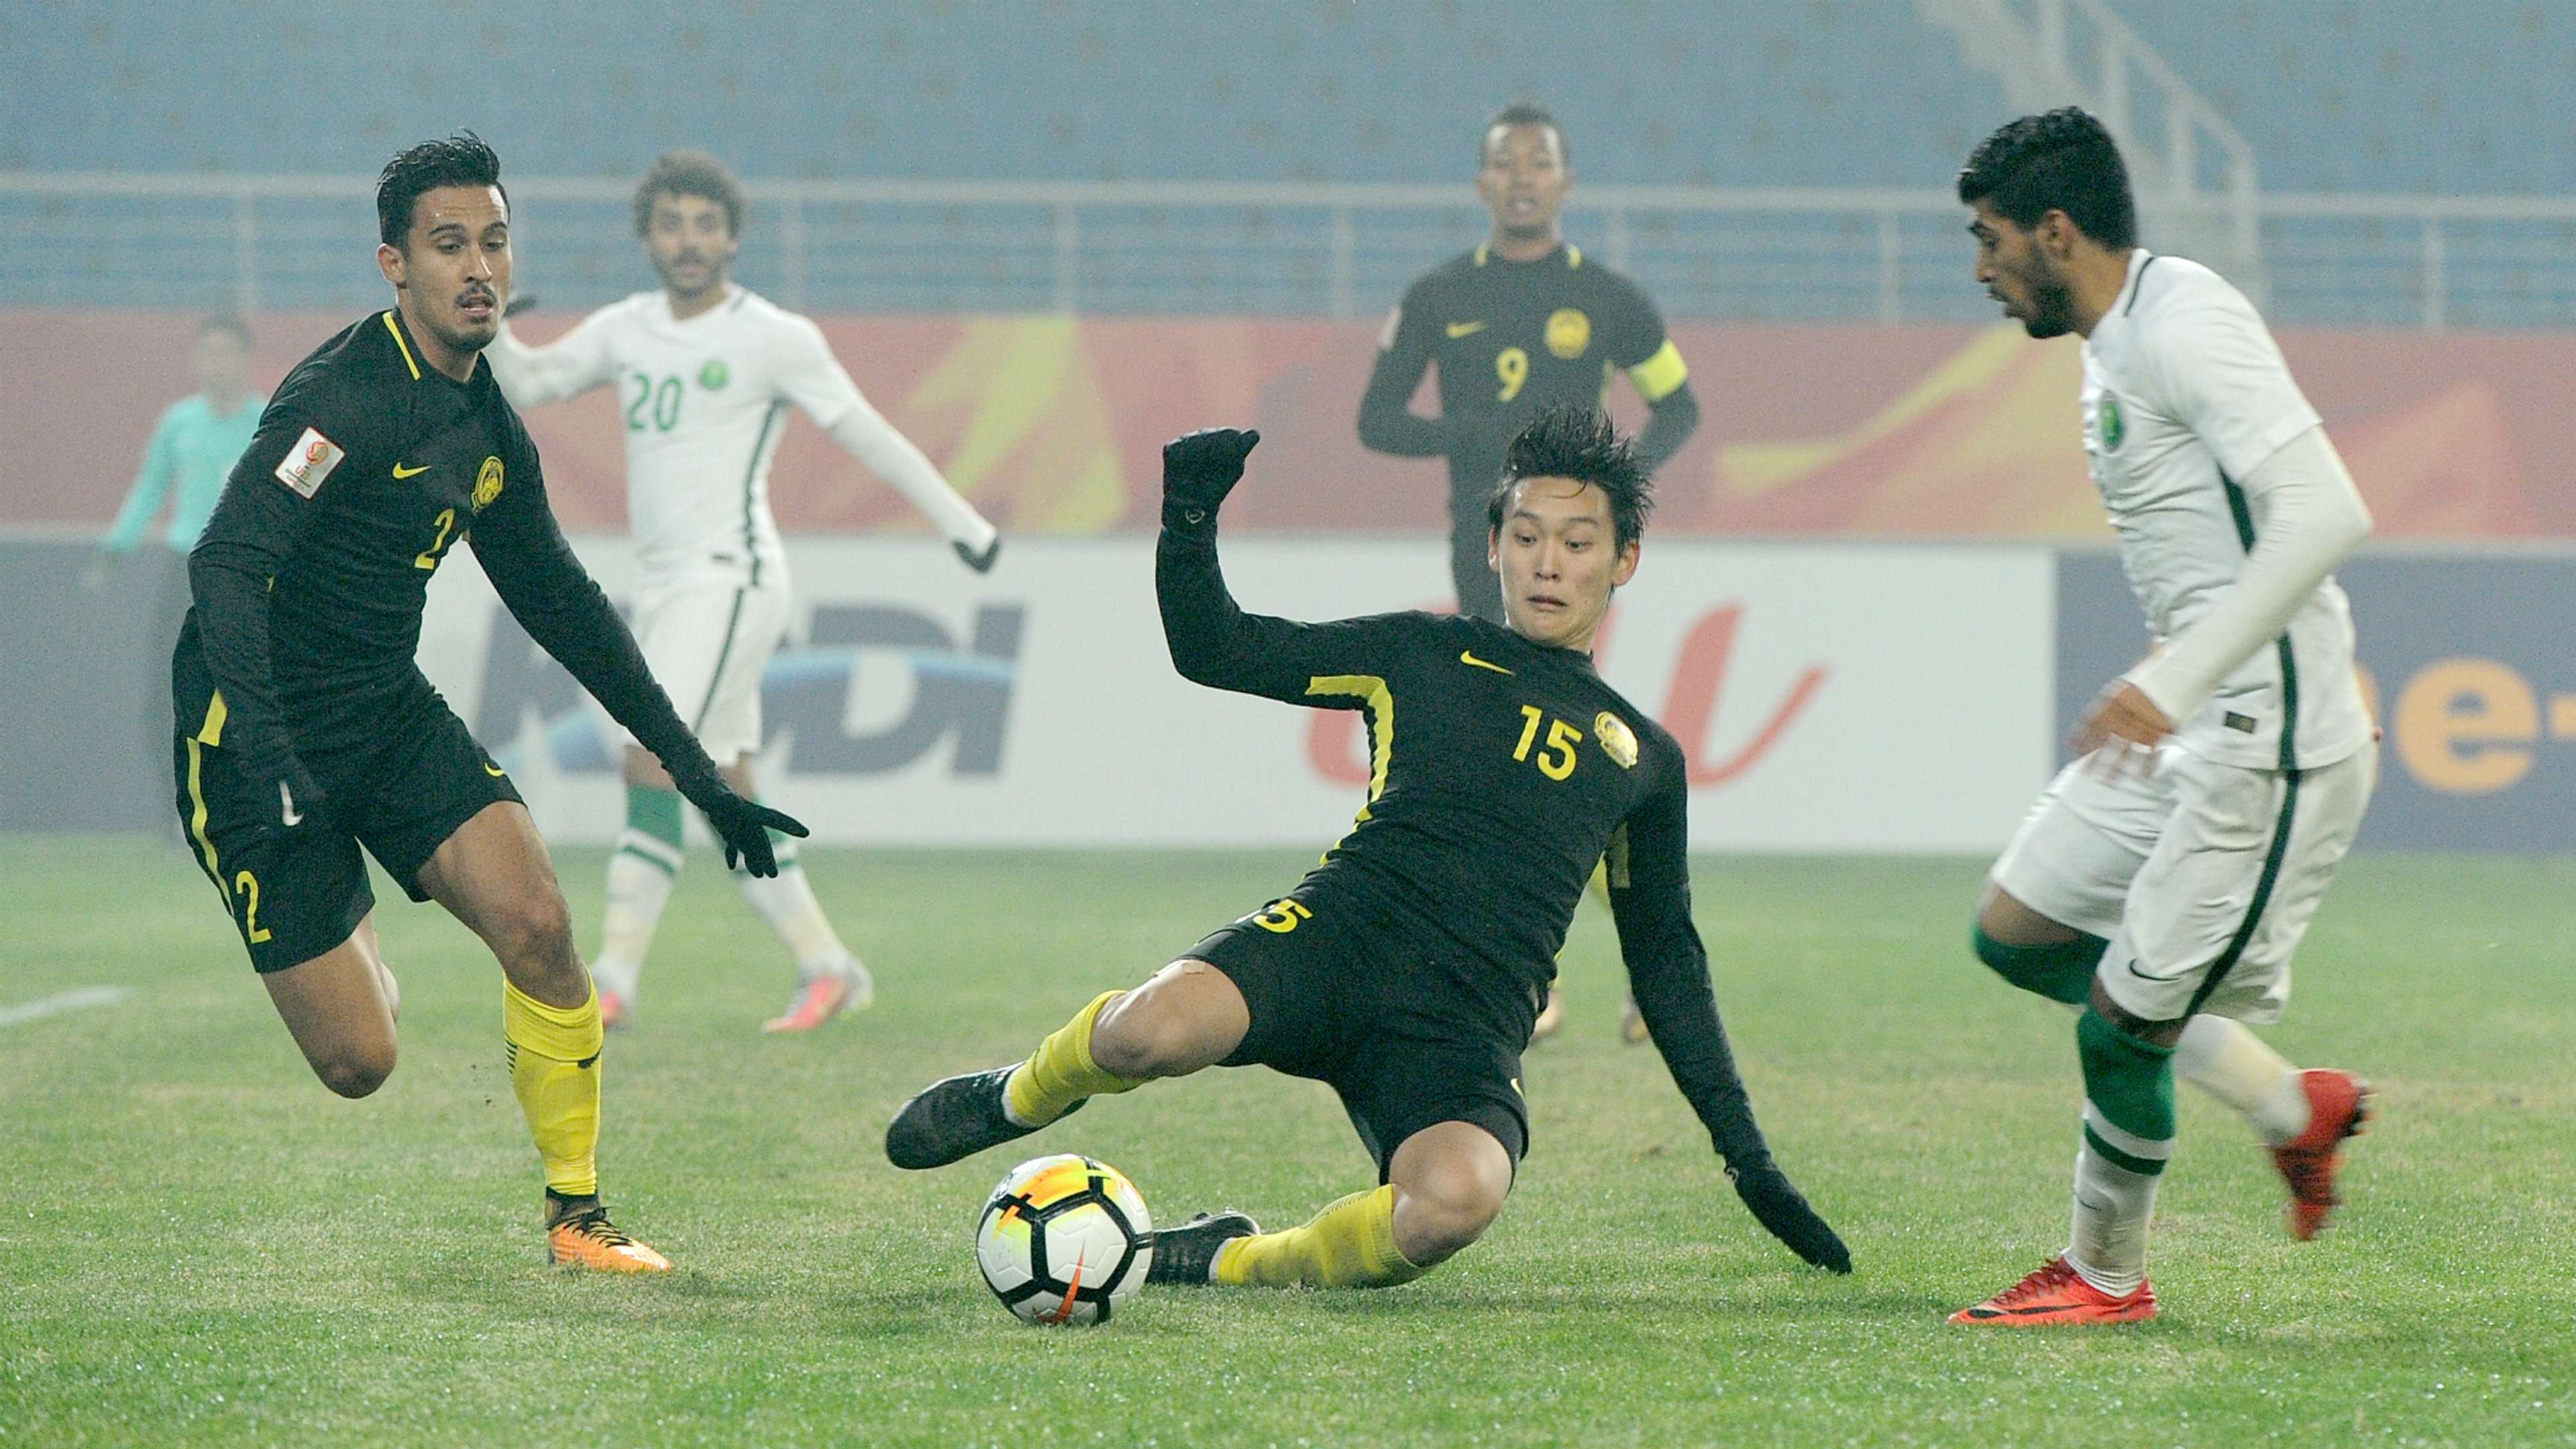 Dominic Tan, Malaysia U23